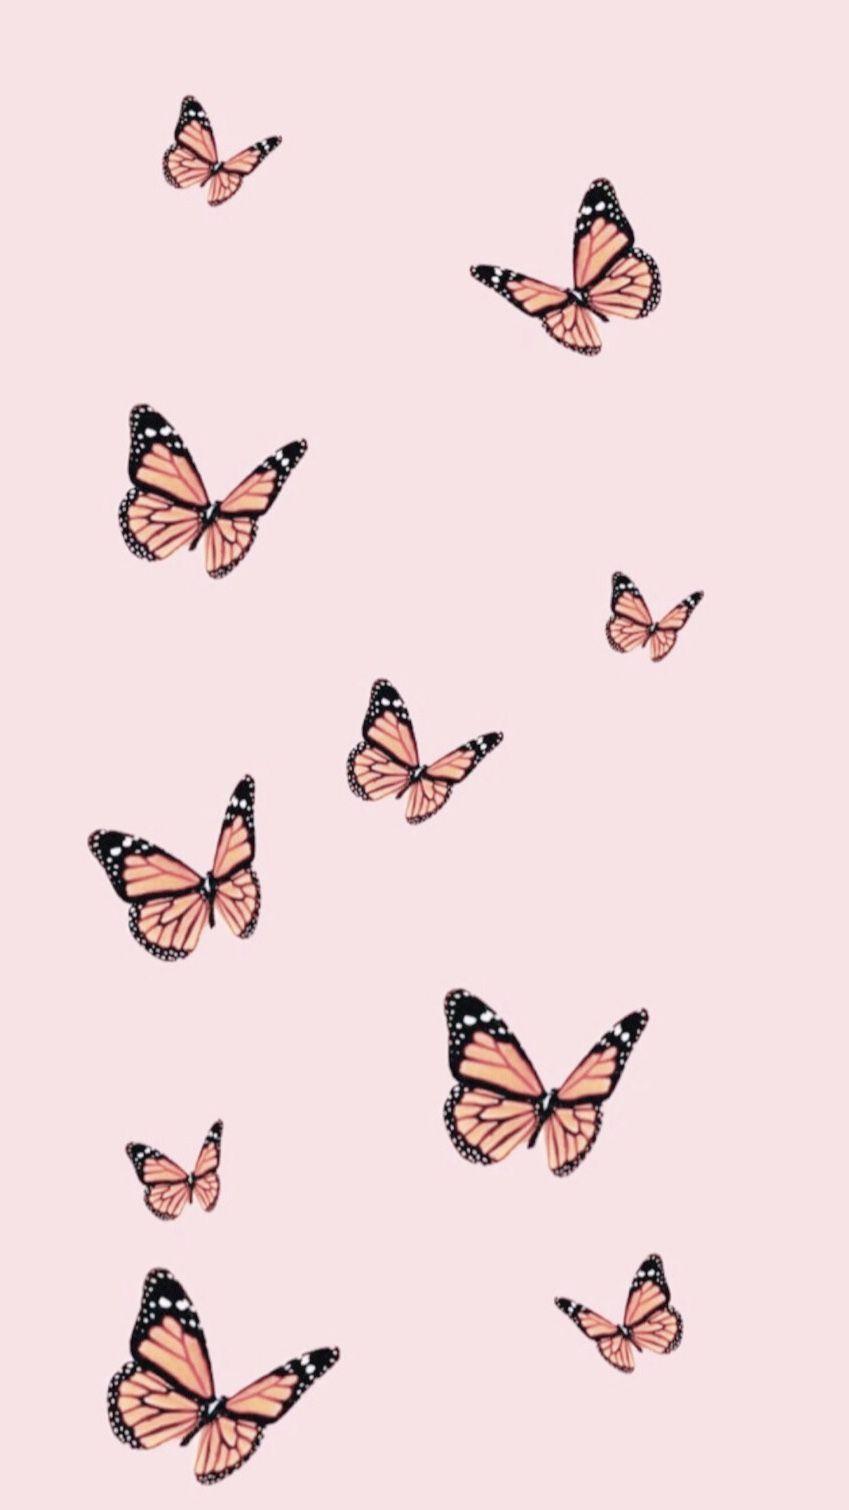 Phone Wallpaper. Butterfly wallpaper